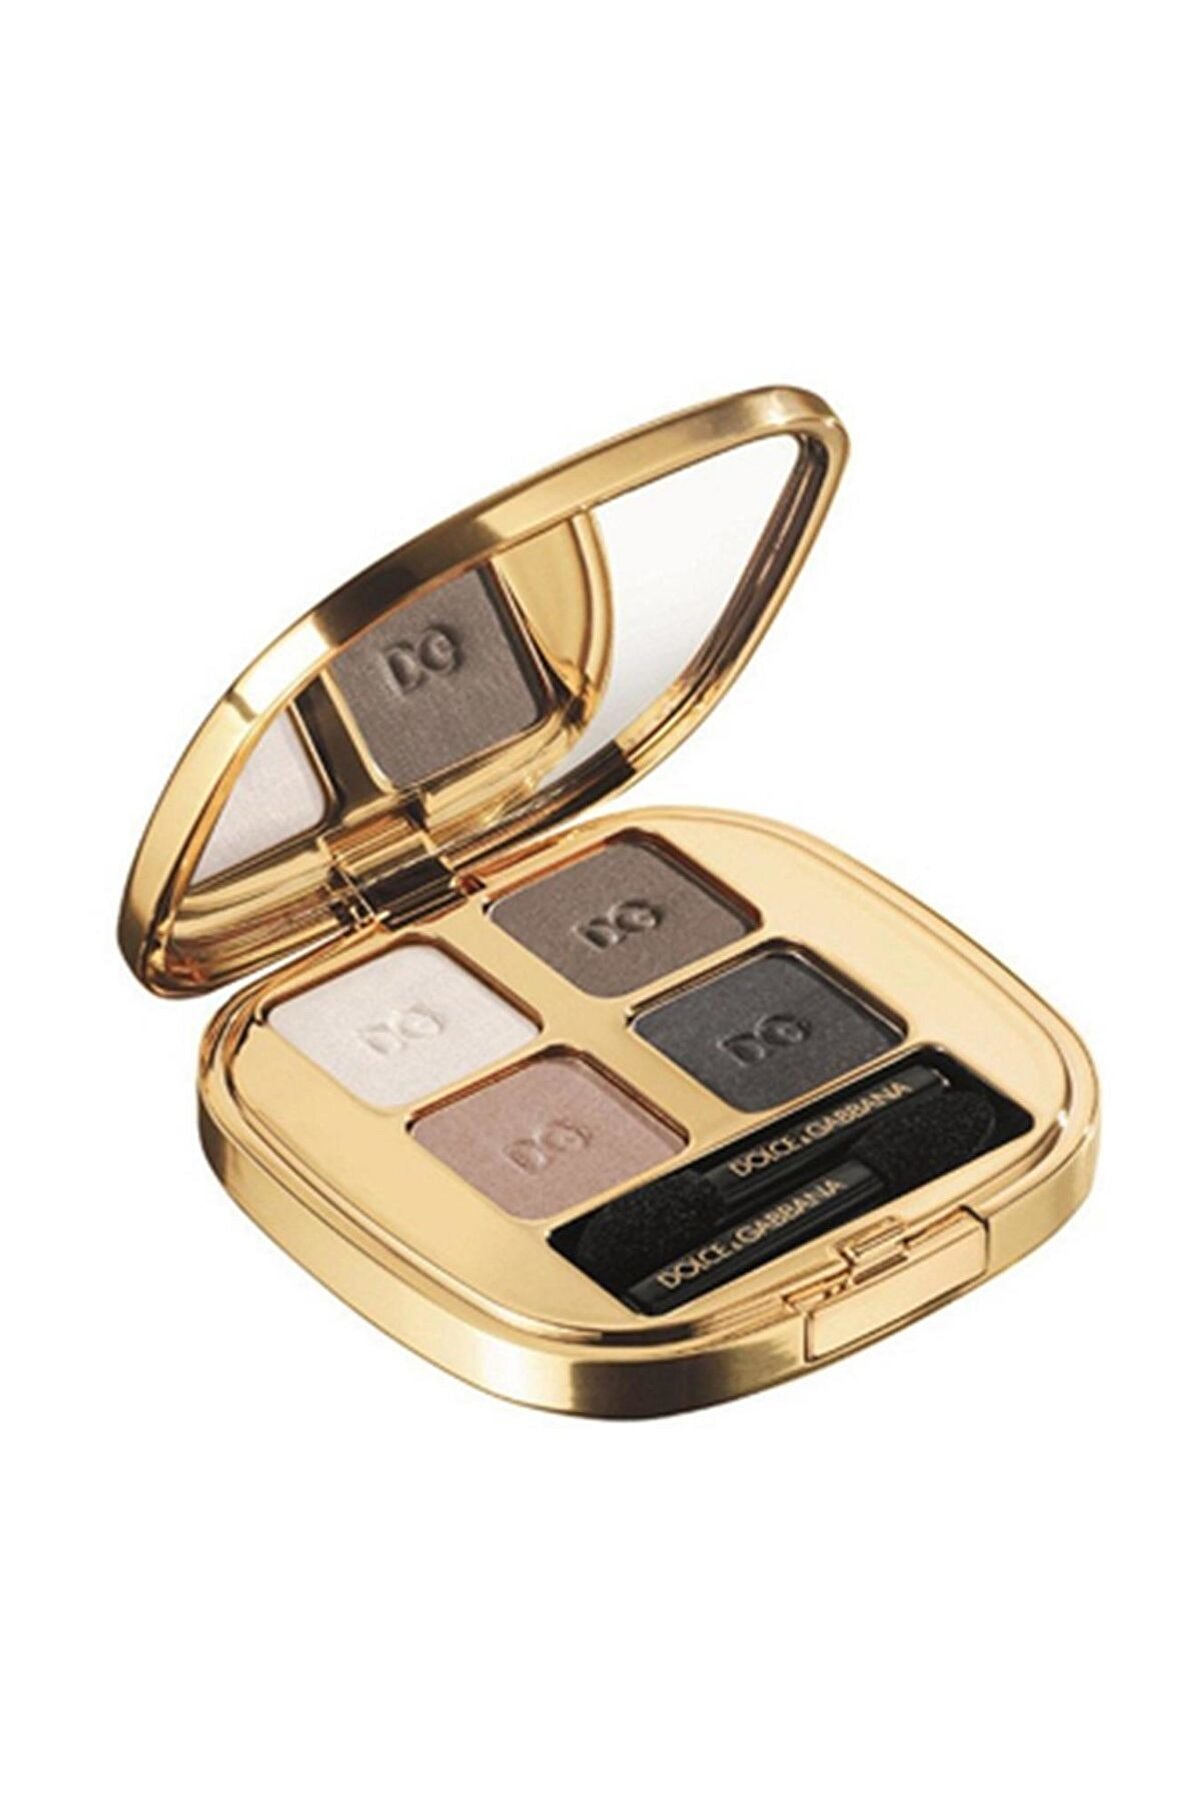 Dolce Gabbana Smooth Eye Colour Quad Göz Farı 100 Femme Fatale 737052453811